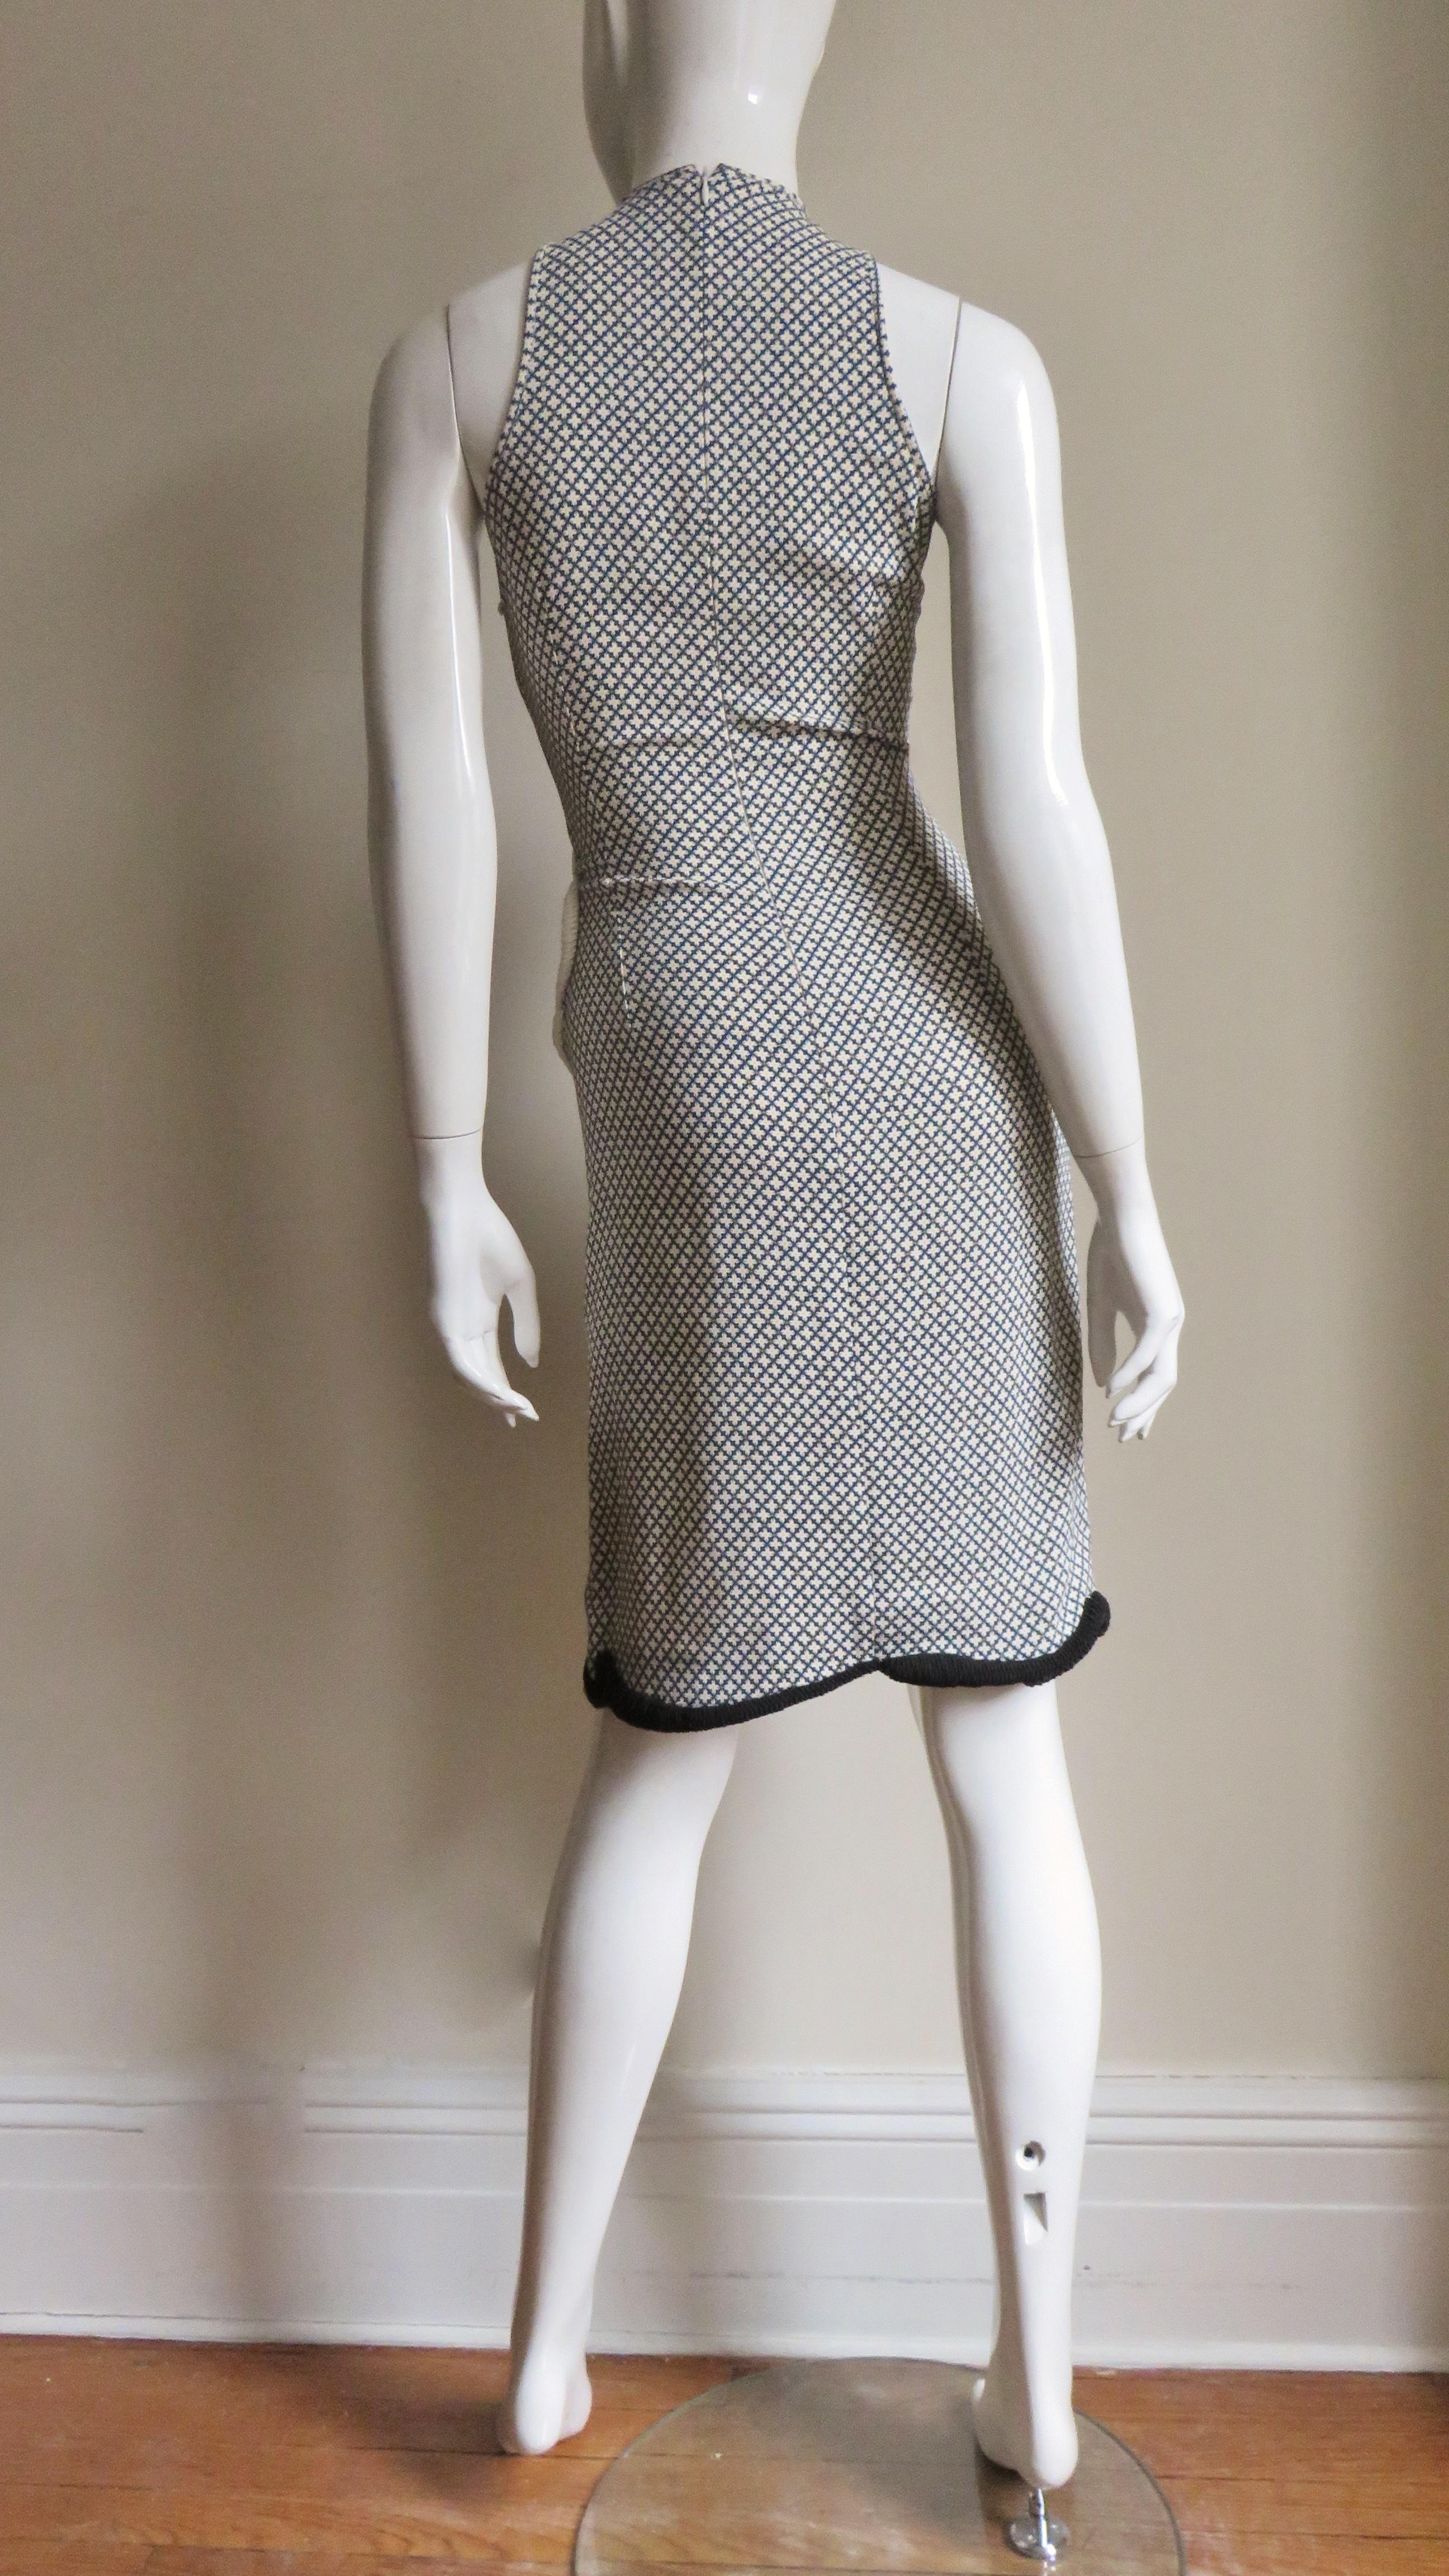 Stella McCartney Neues Kleid mit gemischten Mustern für die Anzeigenkampagne 11